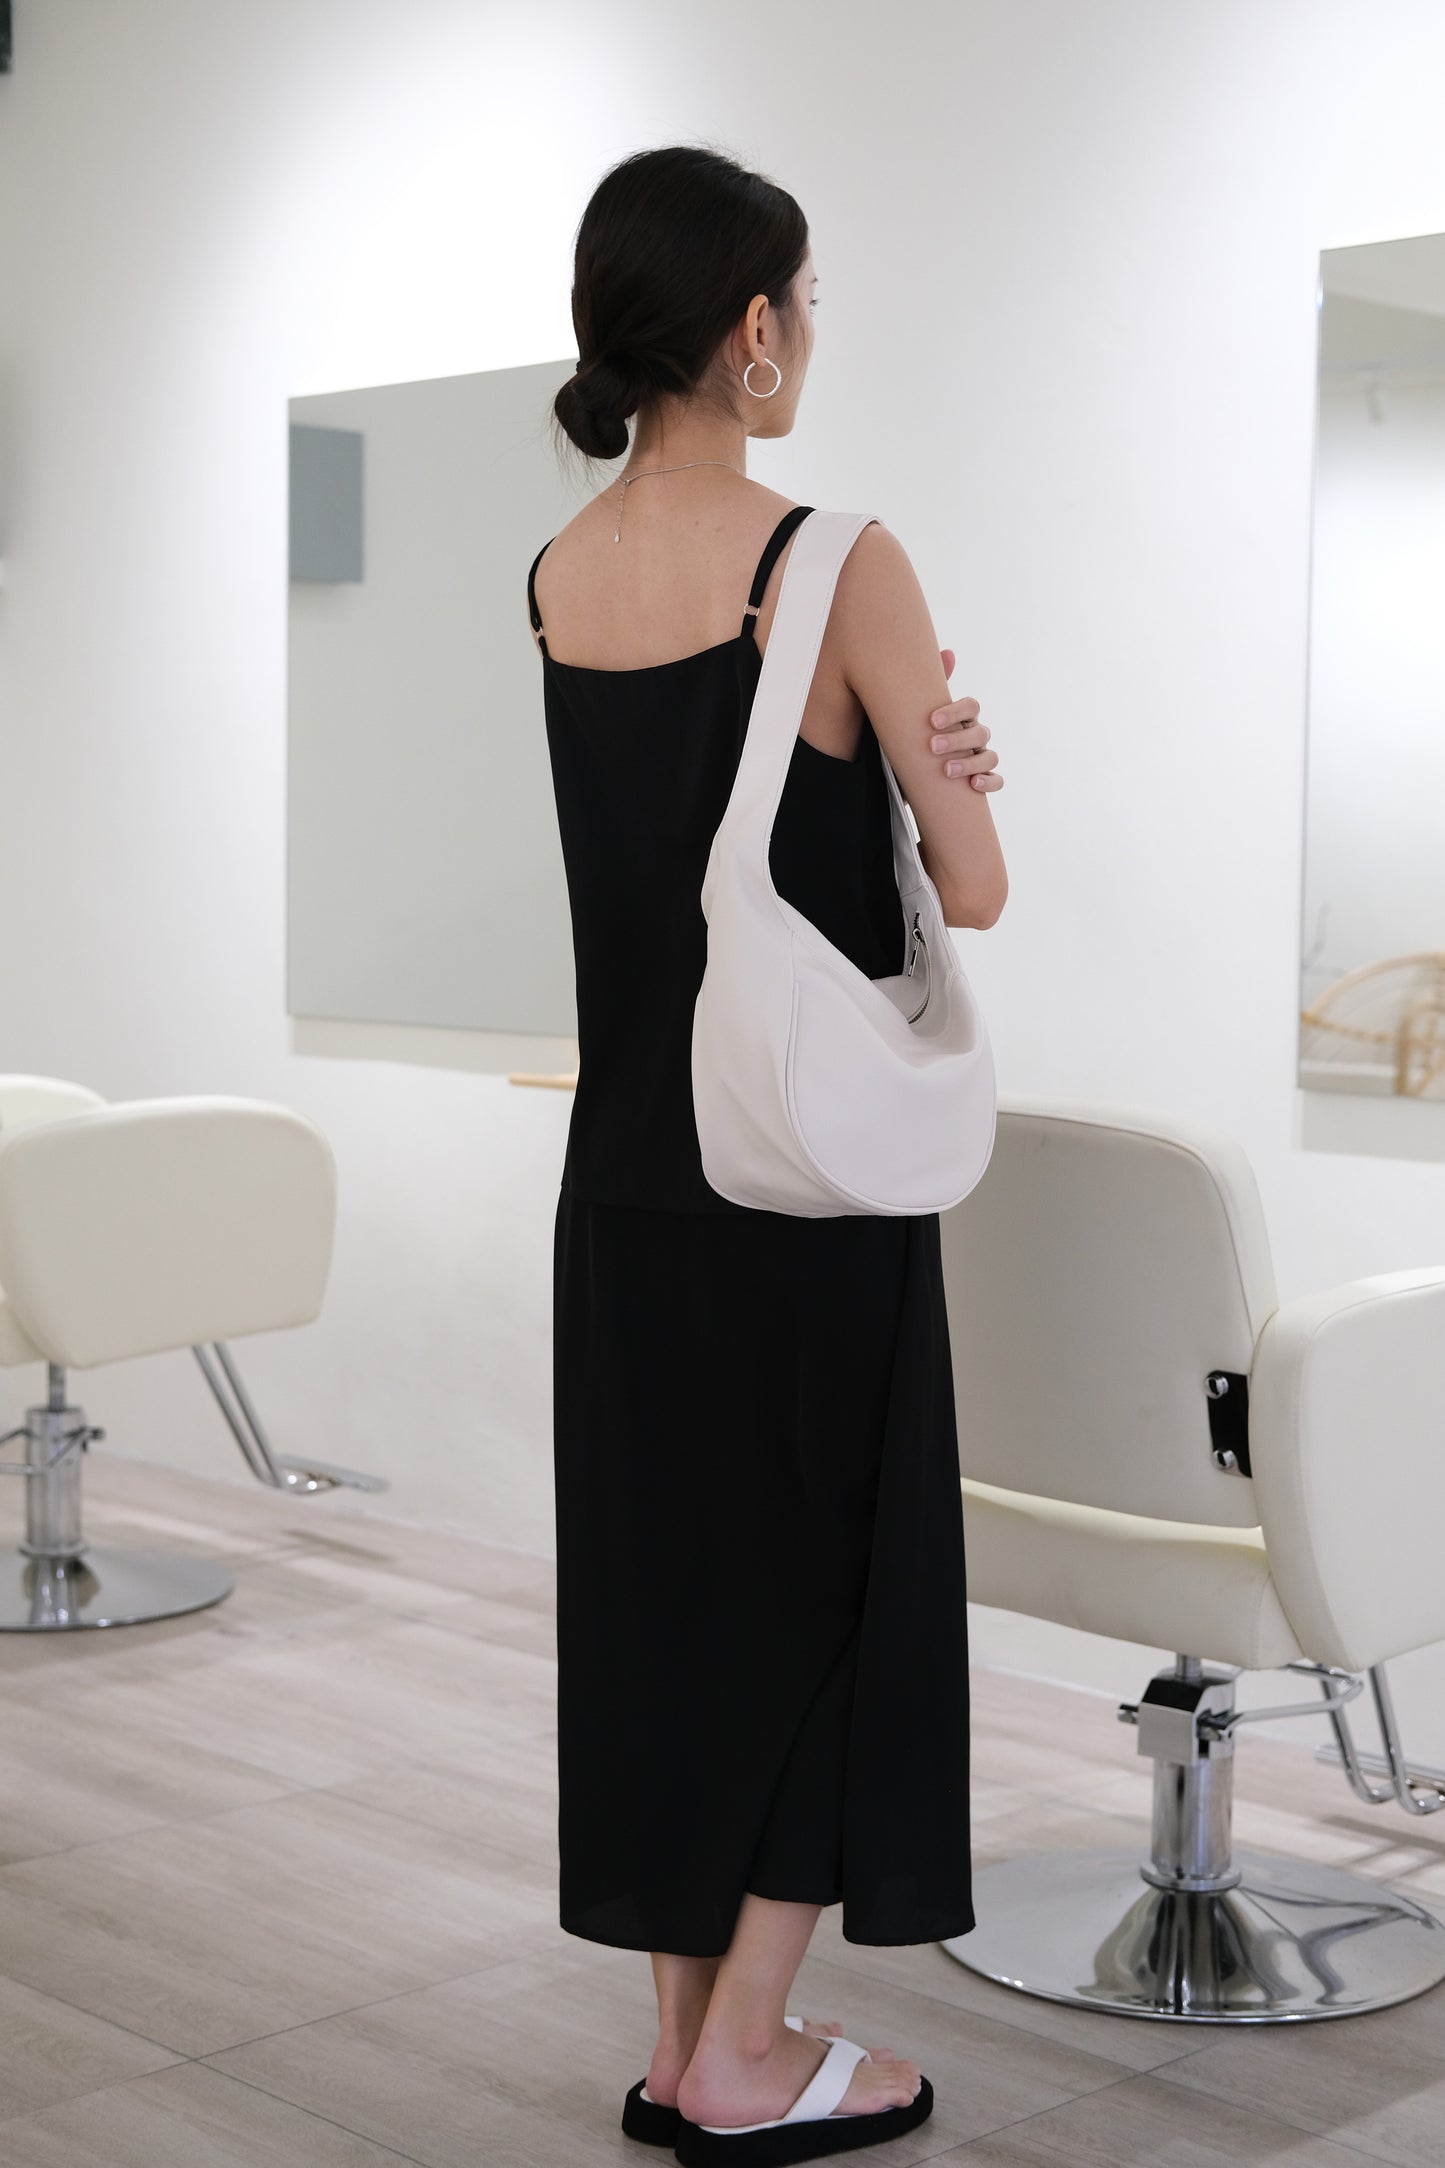 V-neck sleeveless vest + high-rise hip skirt in black color